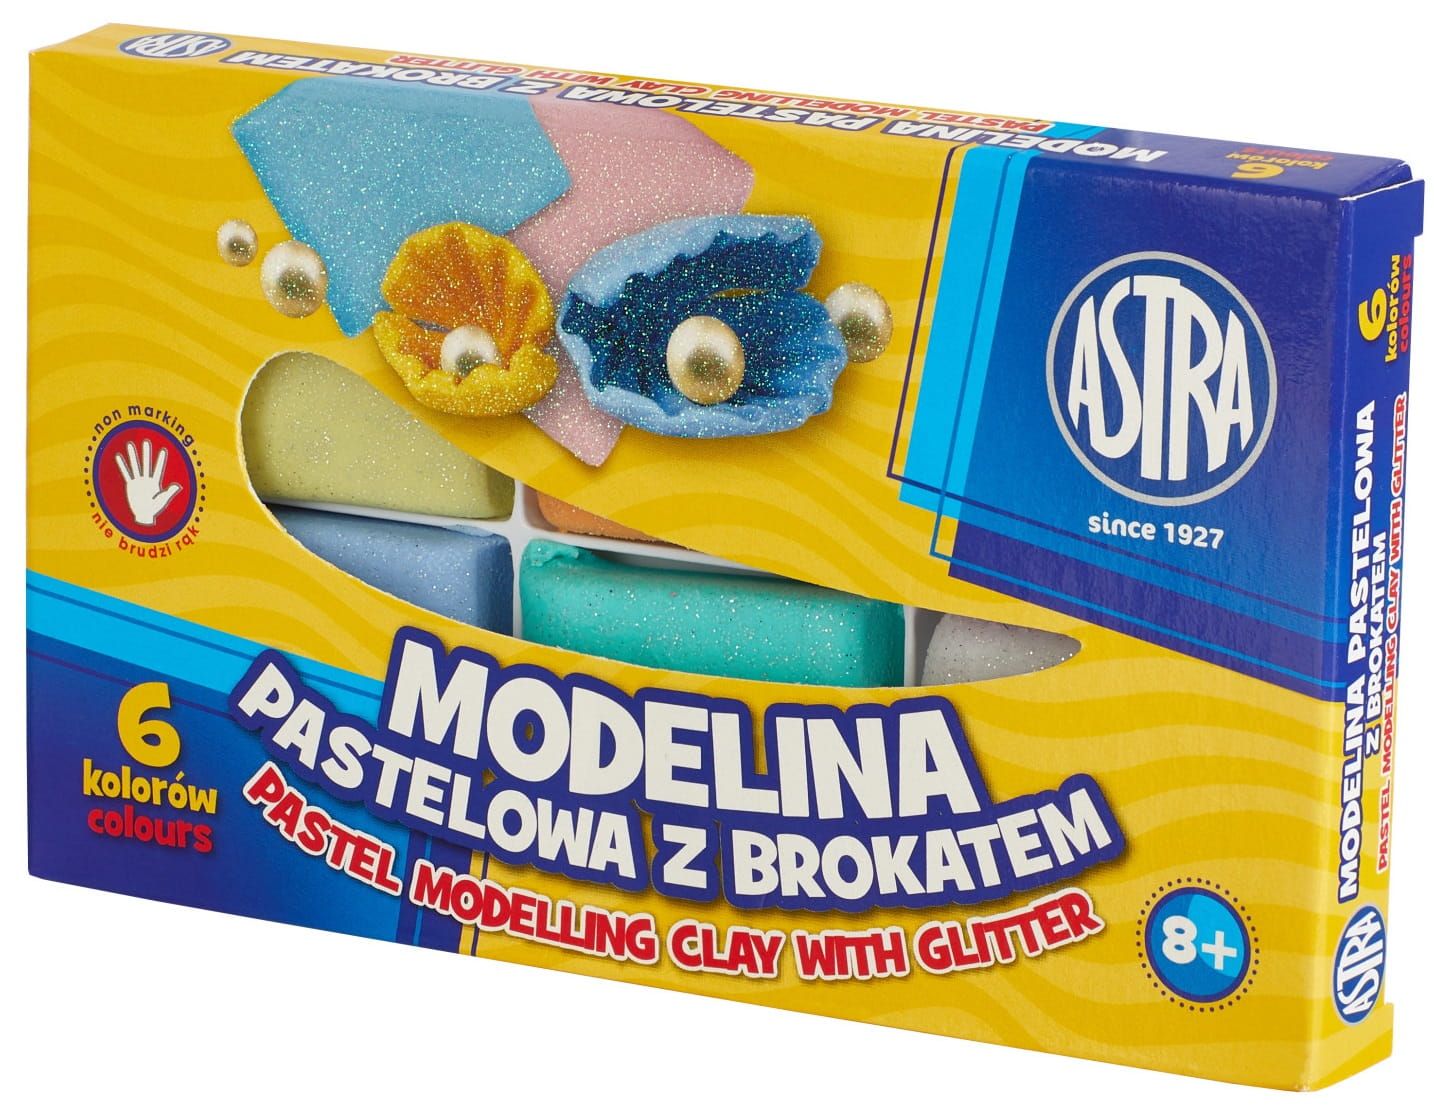 ASTRA Modelina pastelowa z brokatem 6 kolorów